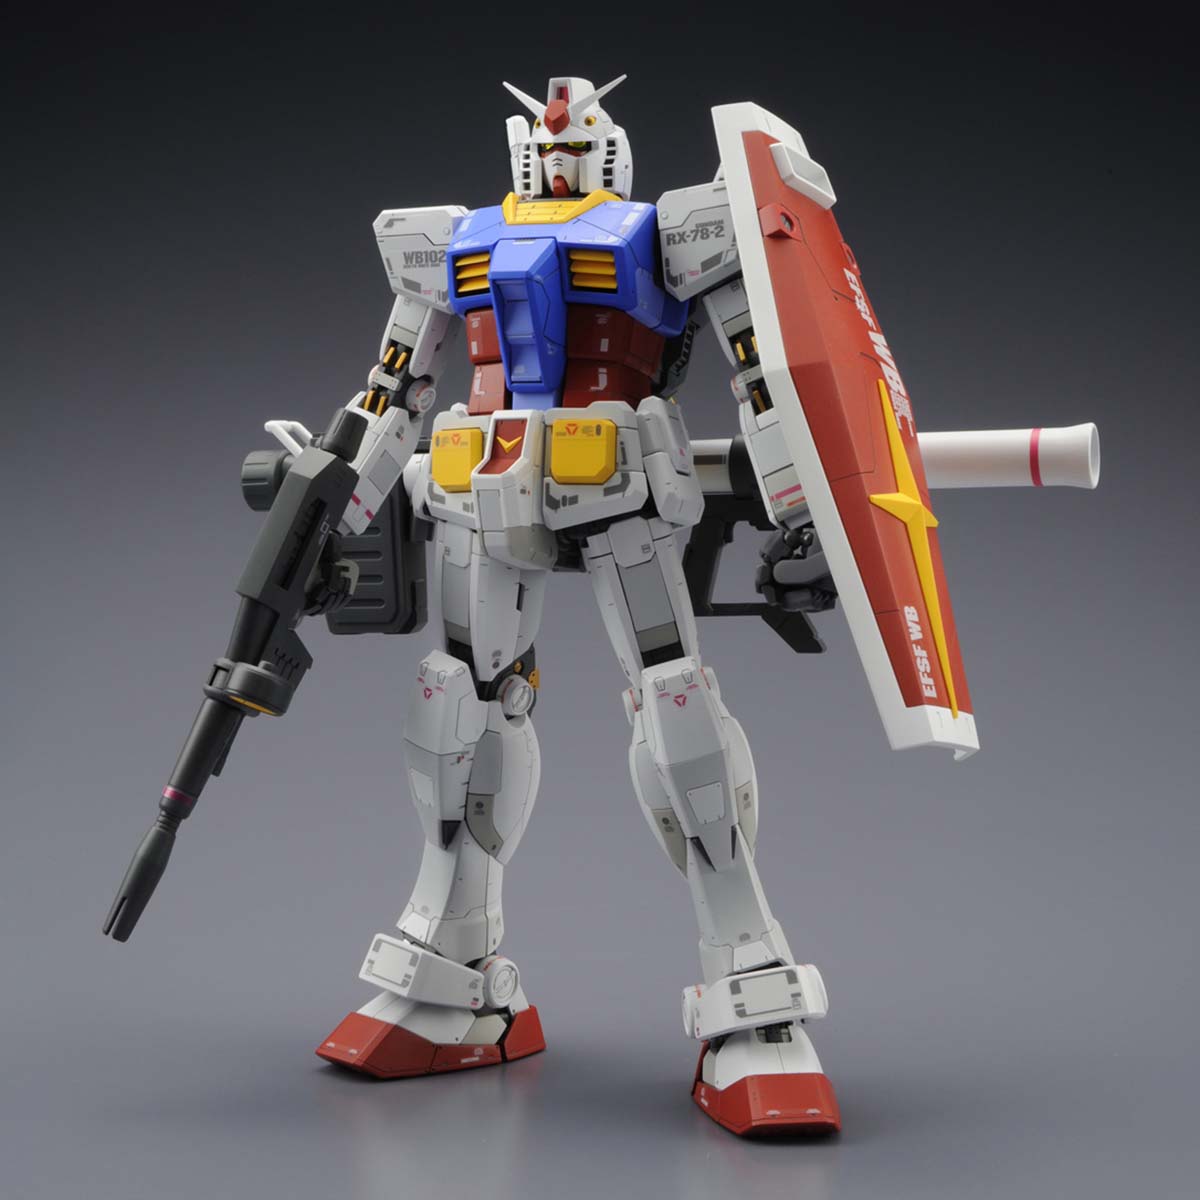 MG 1/100 RX-78-2 Gundam Ver.3.0 – Nii G Shop